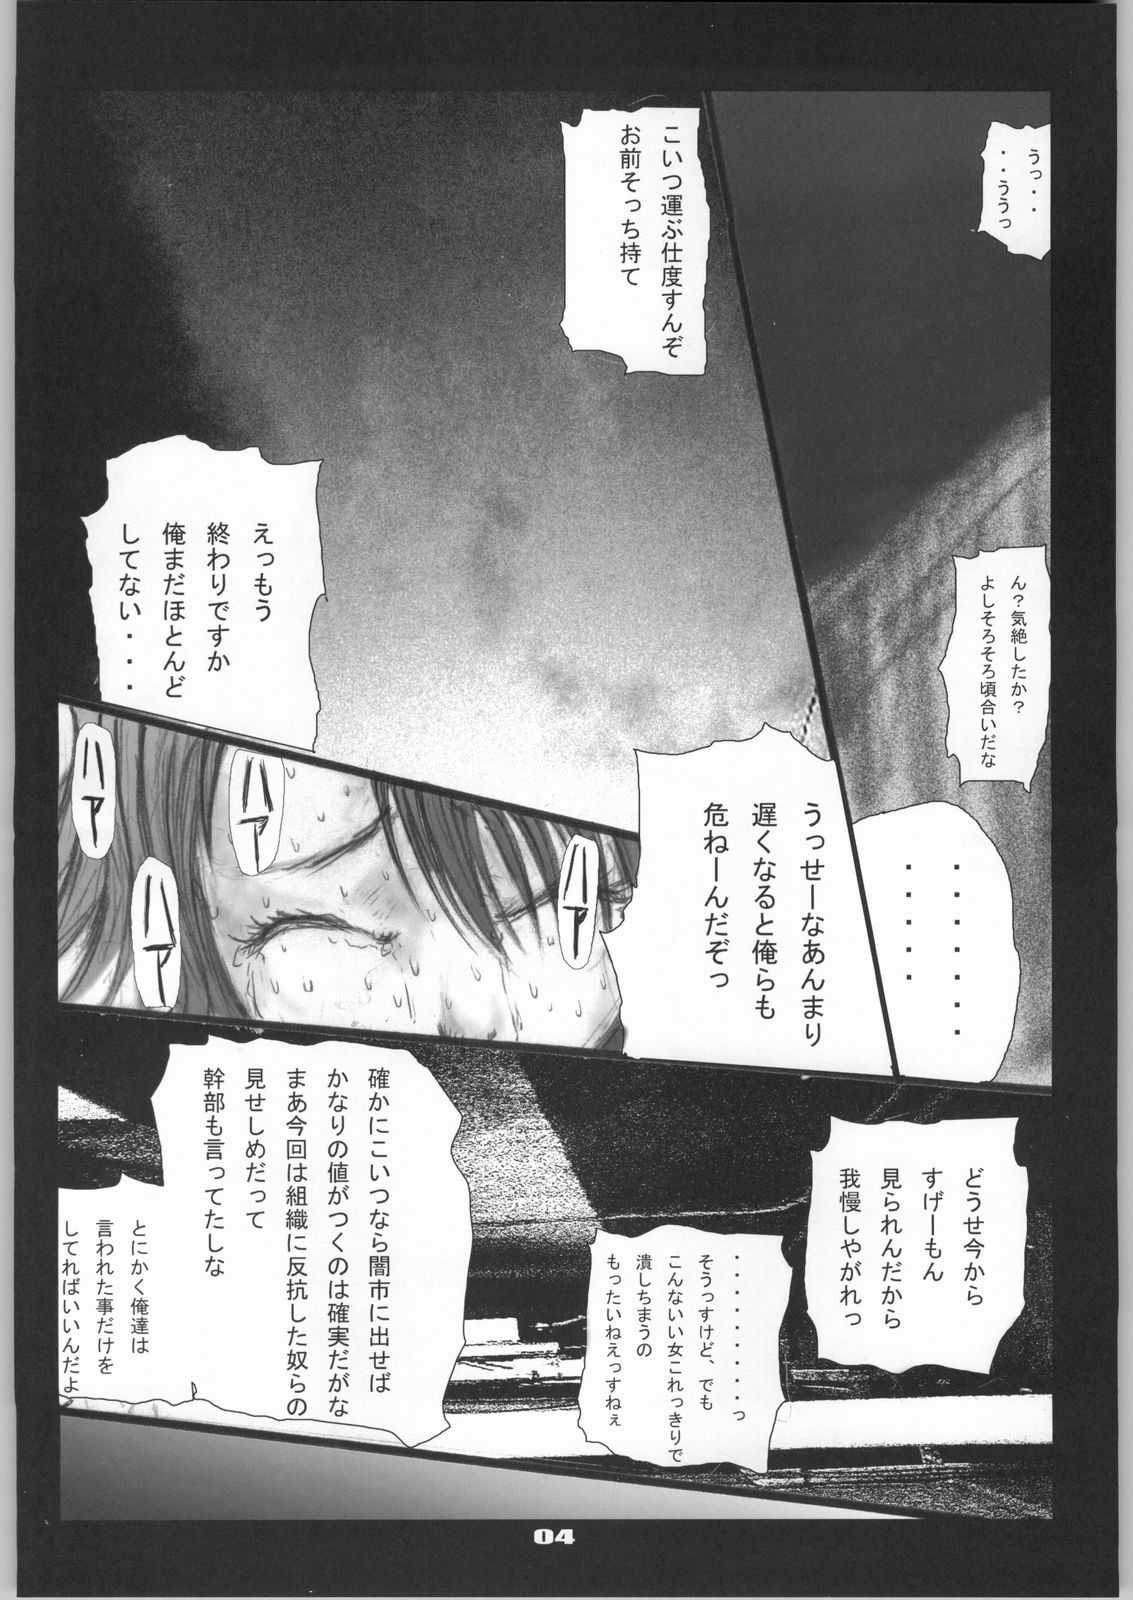 [Zettai Kanzen Rippoutai] Shokushu Matsuri Yu*na Ikenie Kansha Sai (Final Fantasy VII) [絶対完全立方体] 触手祭ユ○ナ生贄感謝祭 (ファイナルファンタジーVII)